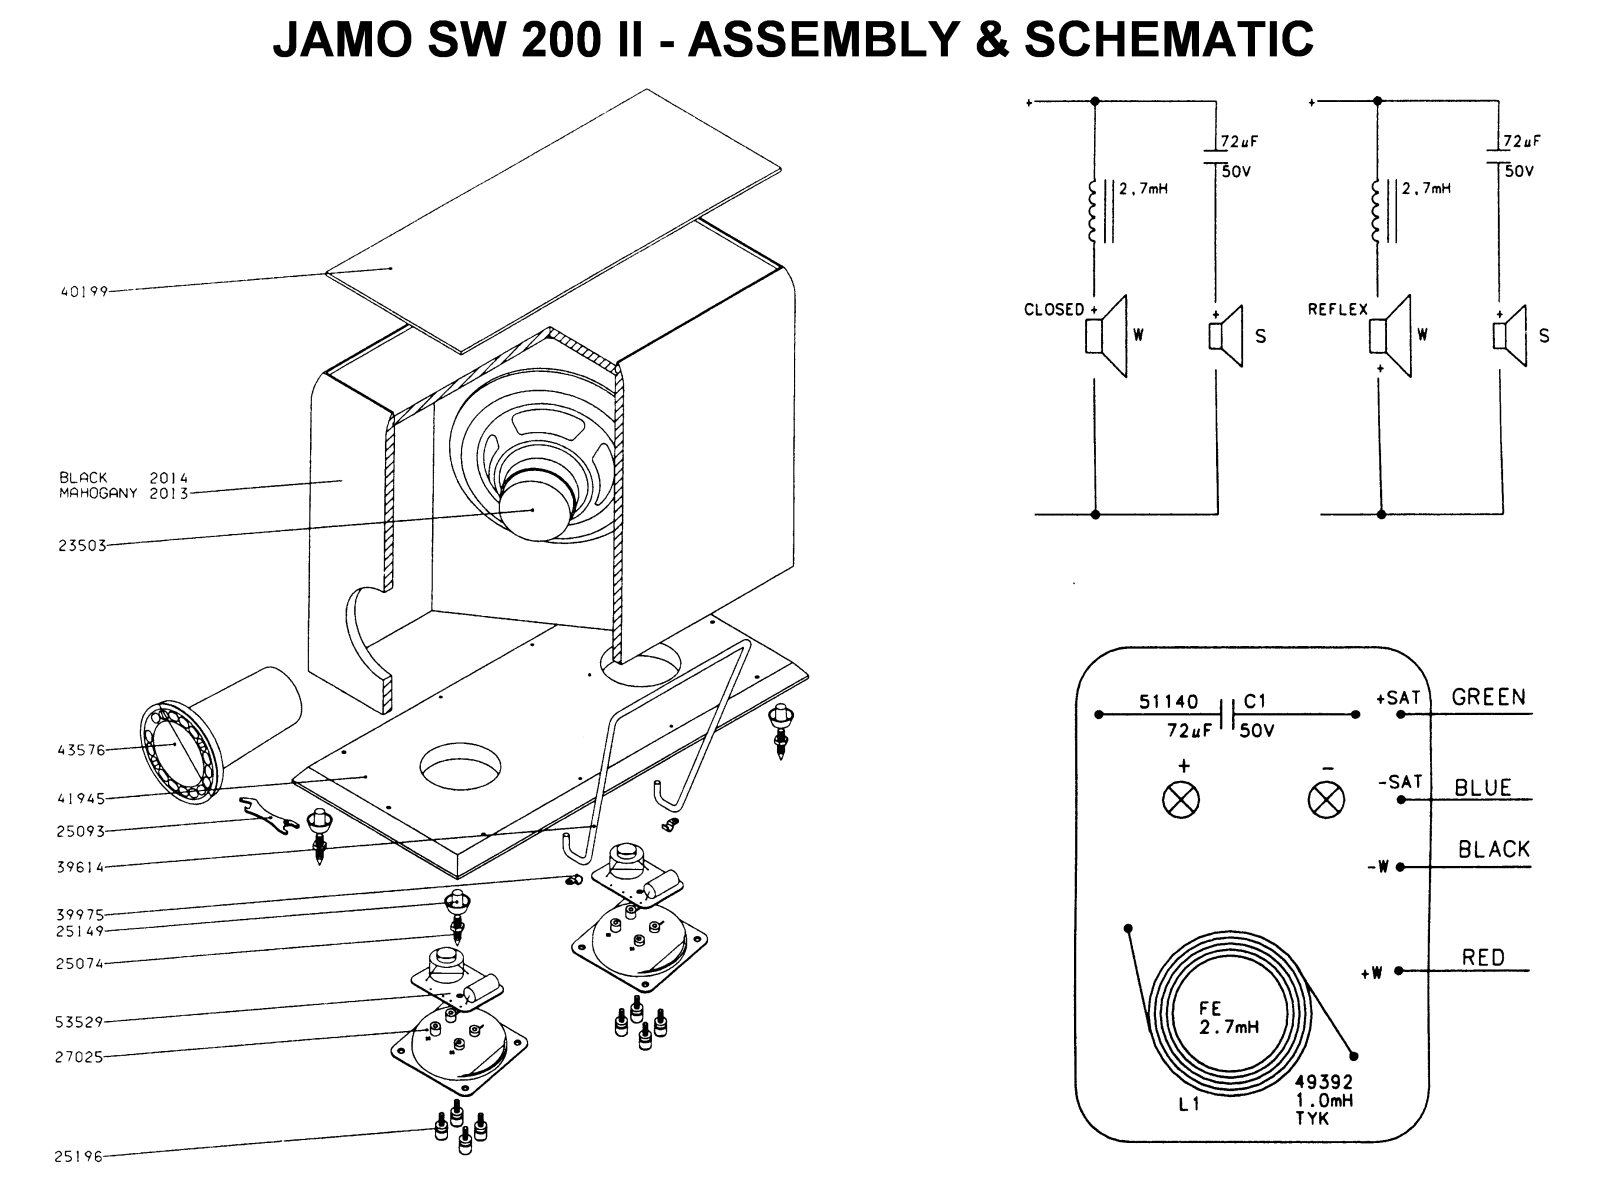 Jamo SW200 II Schematic